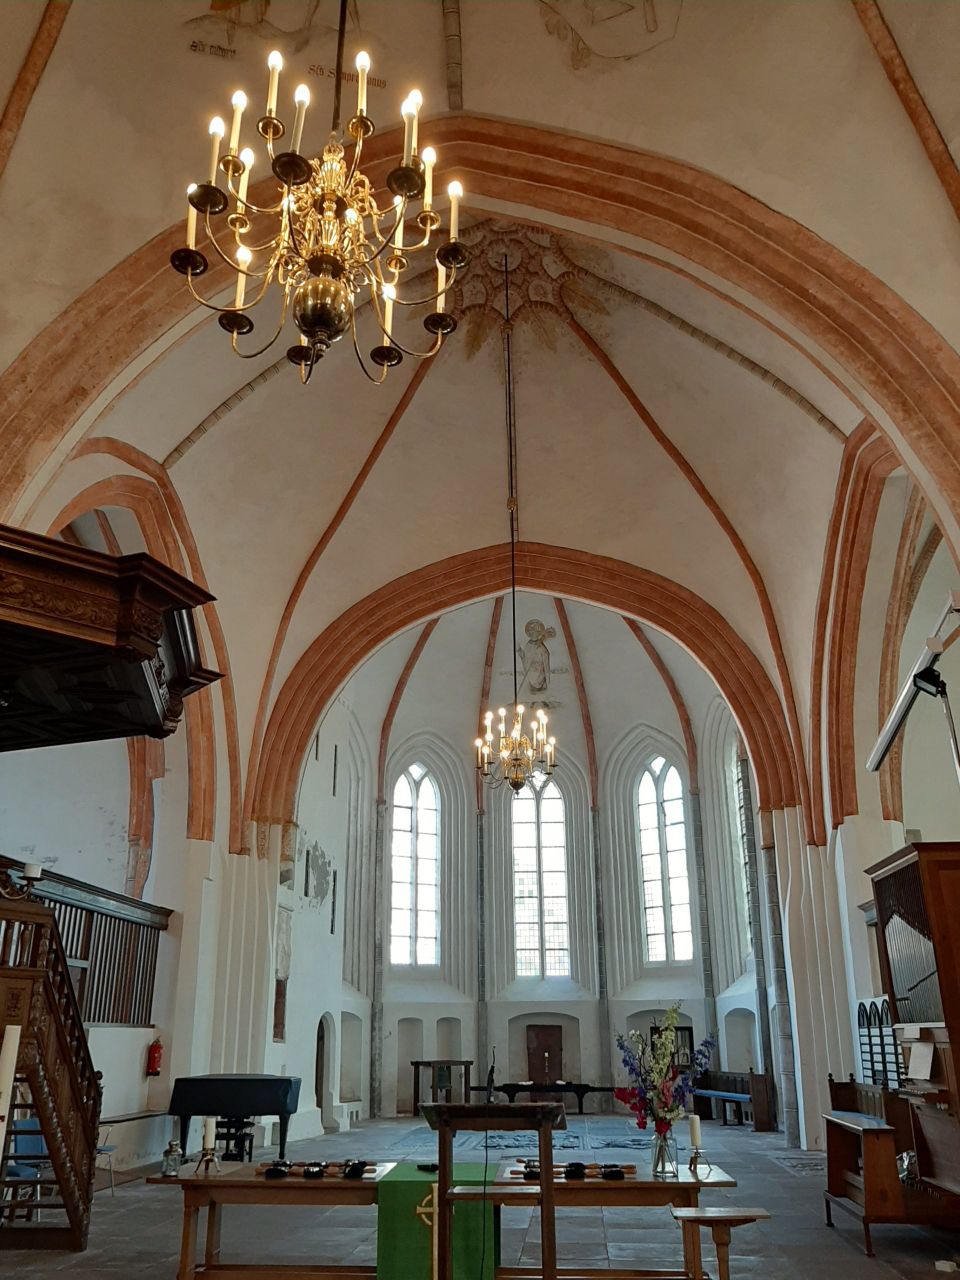 Foto: gemeente Appingedam. Het koor van de Nicolaïkerk in Appingedam waarin het concert plaatsvindt.